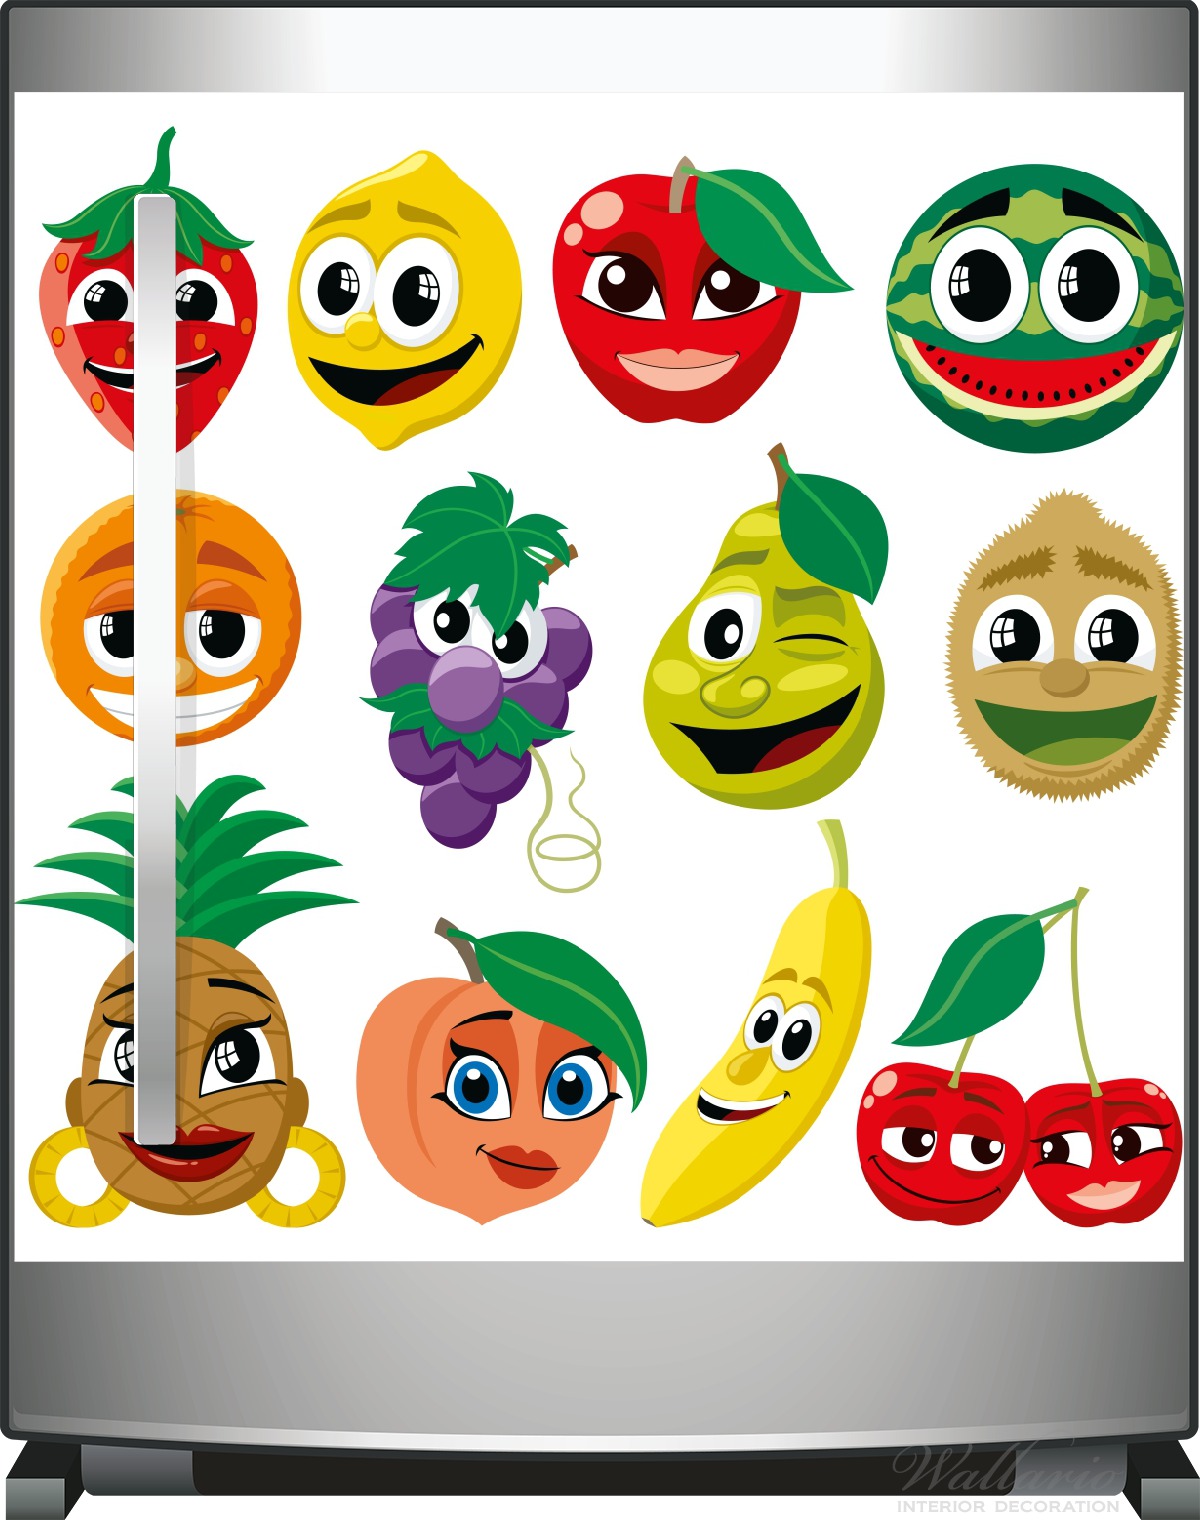 Kühlschranksticker Obst-Smilies im Comic-Stil - Lustige Früchte